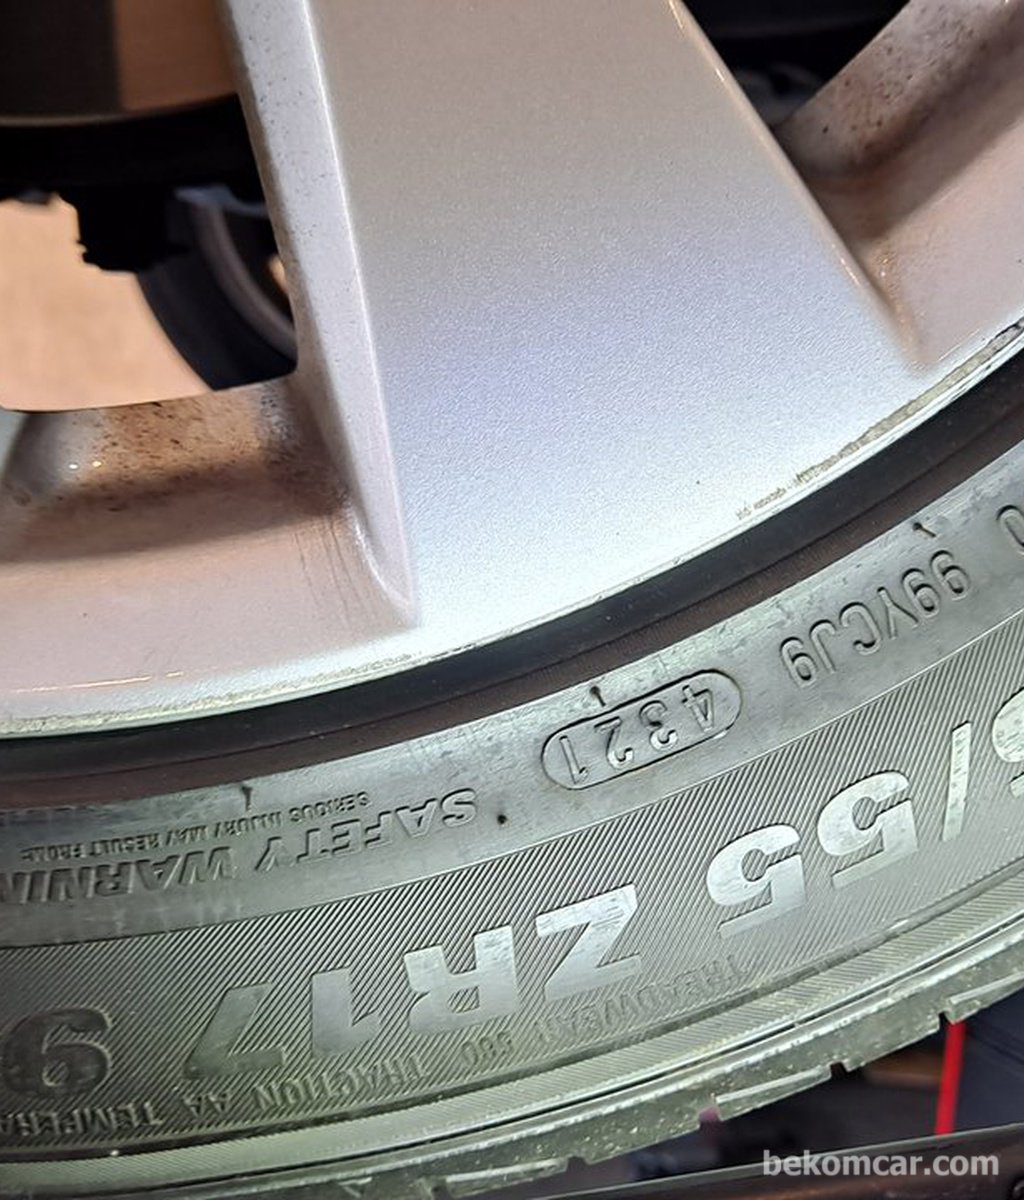 중고차구매 점검에 타이어 상태는 꼭 파악하여 정비비에 포함한다.|베콤카 (bekomcar.com)